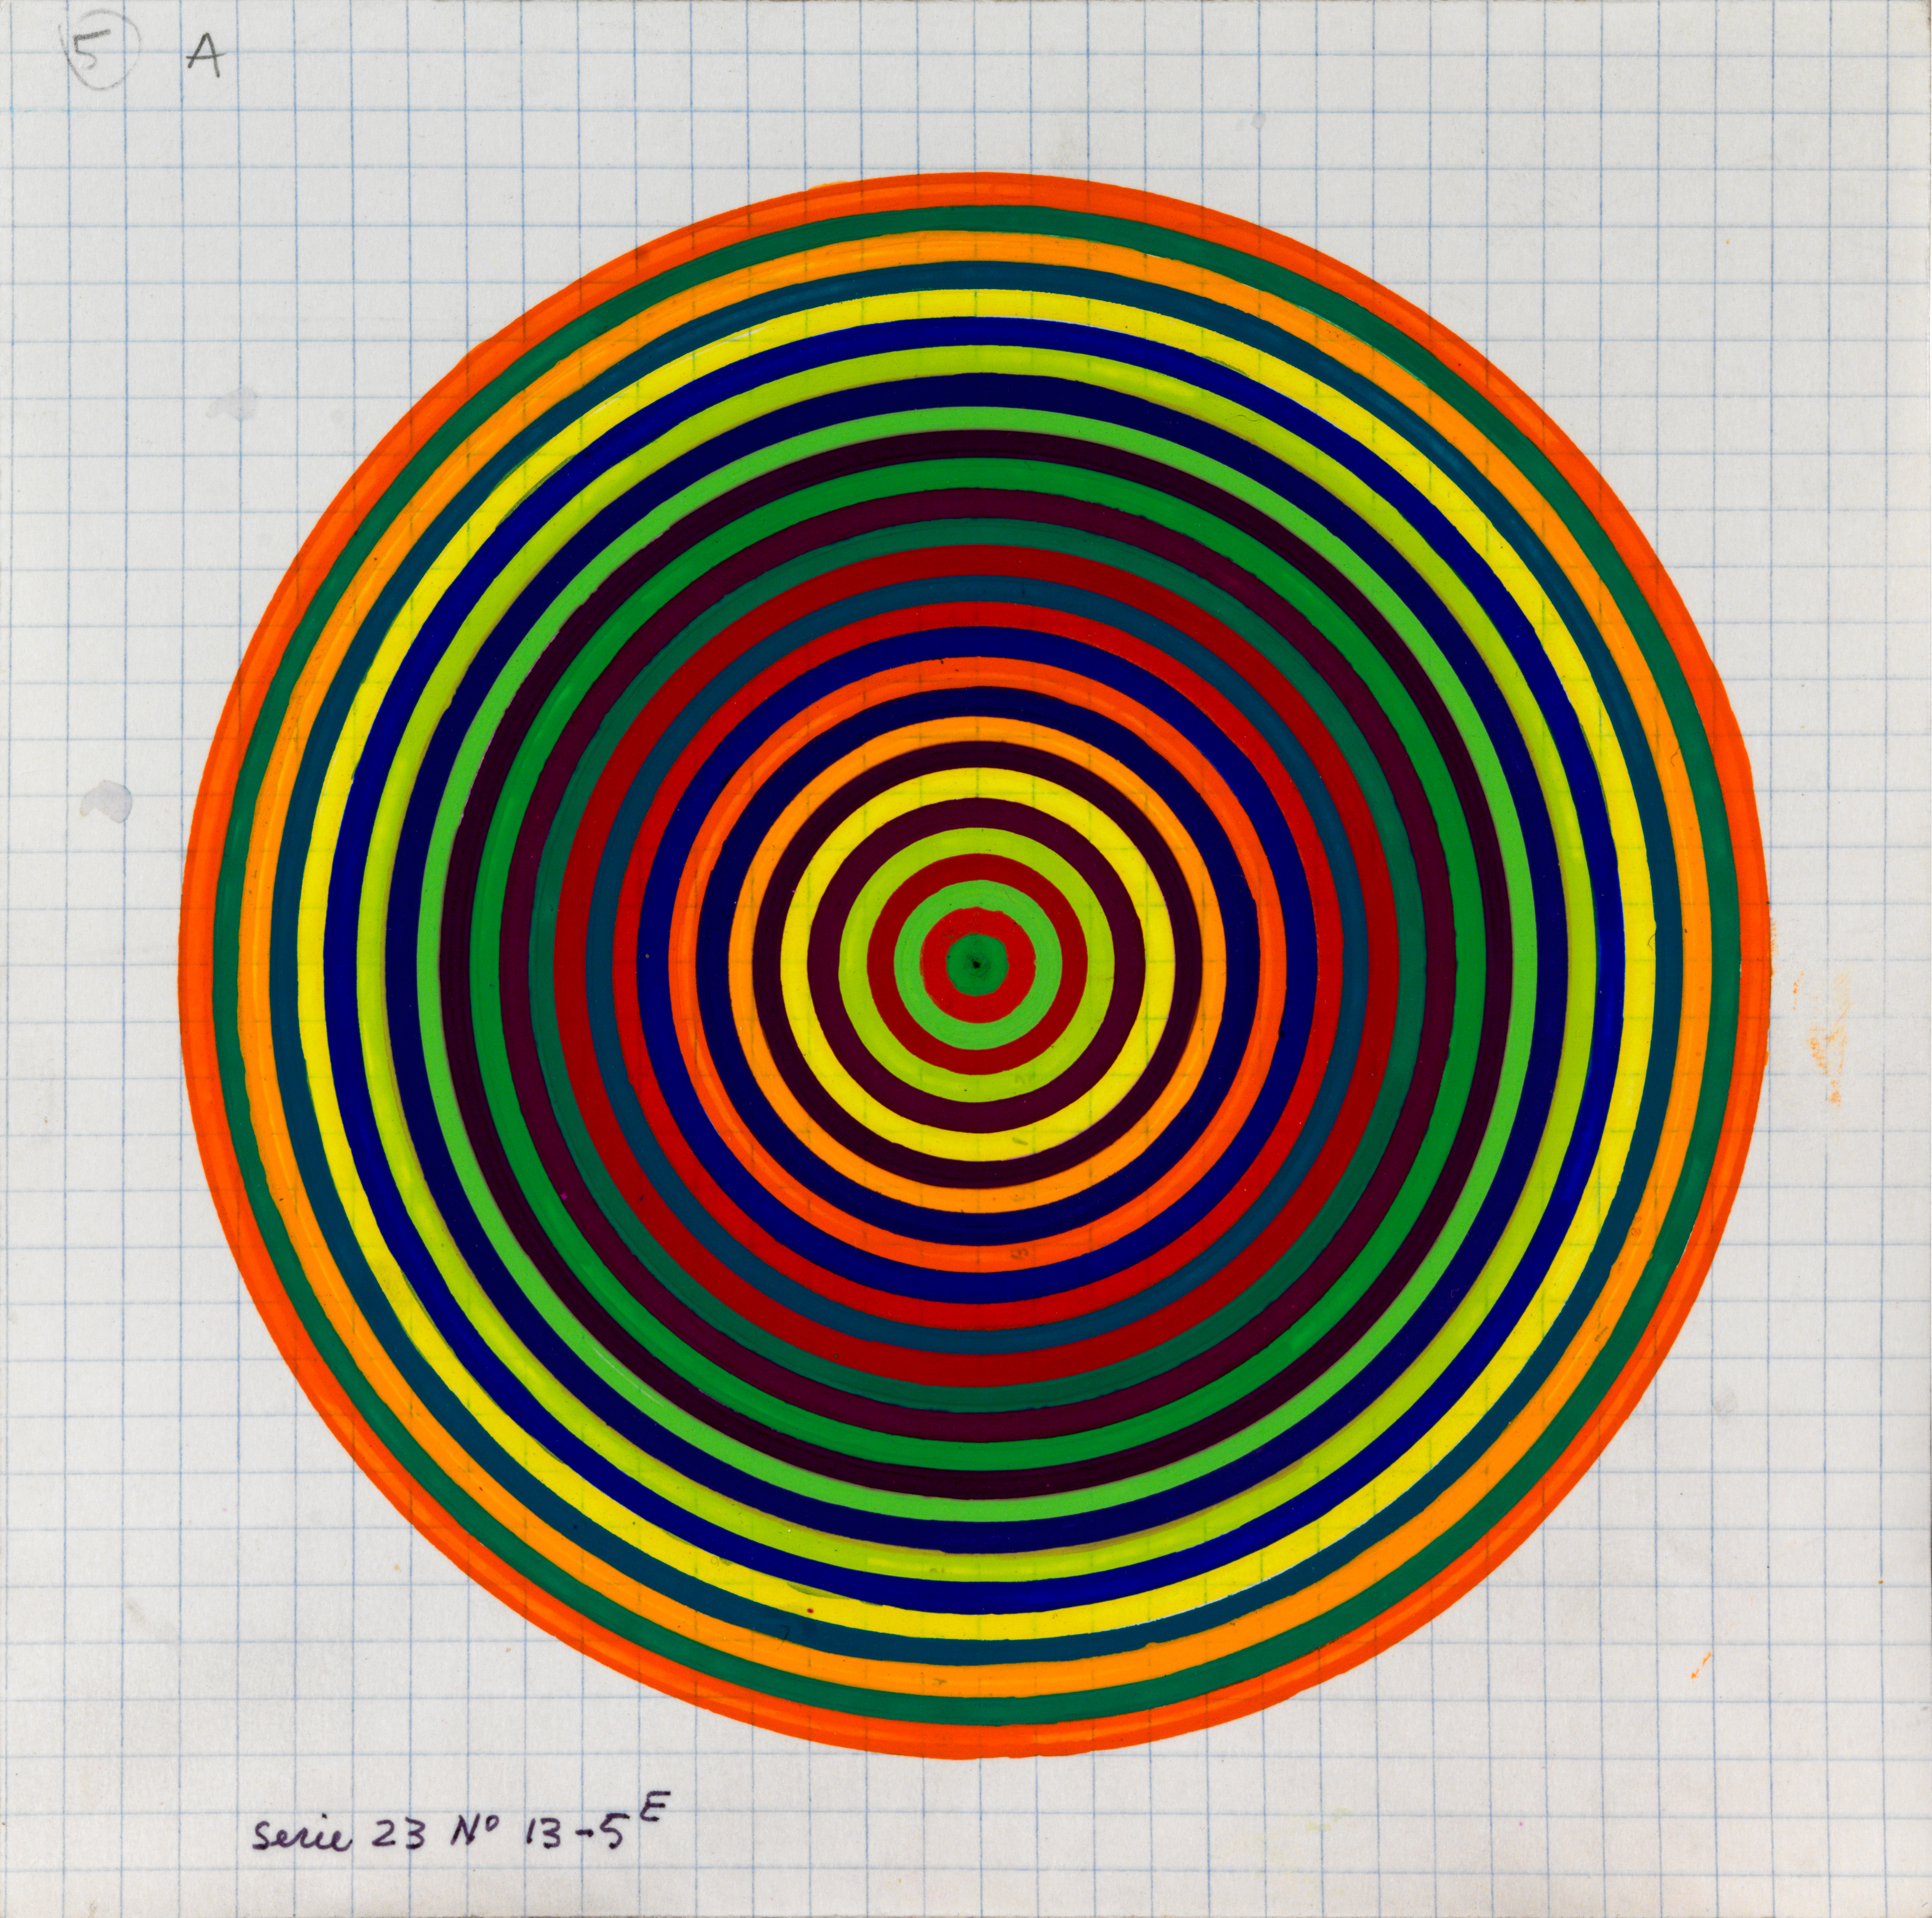 Julio Le Parc, Surface couleur, Cercles, série 23 n°13-5 E